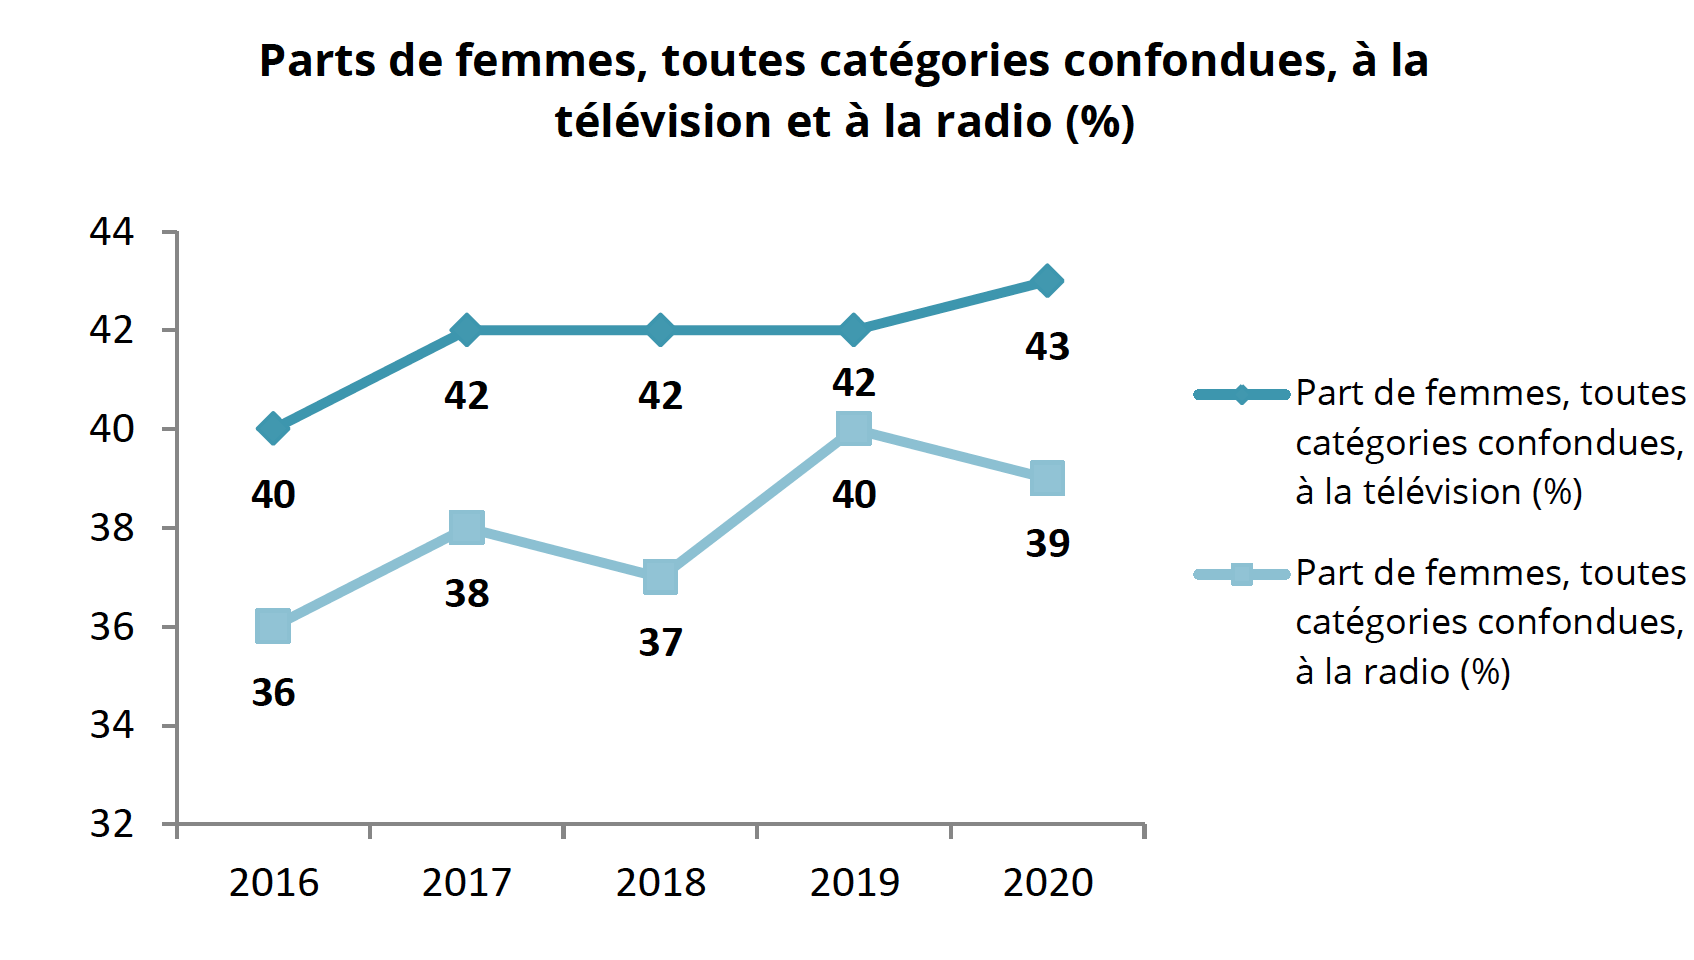 La proportion de femmes à la télévision continue de progresser (43 %) alors qu’elle diminue légèrement en radio (39%)